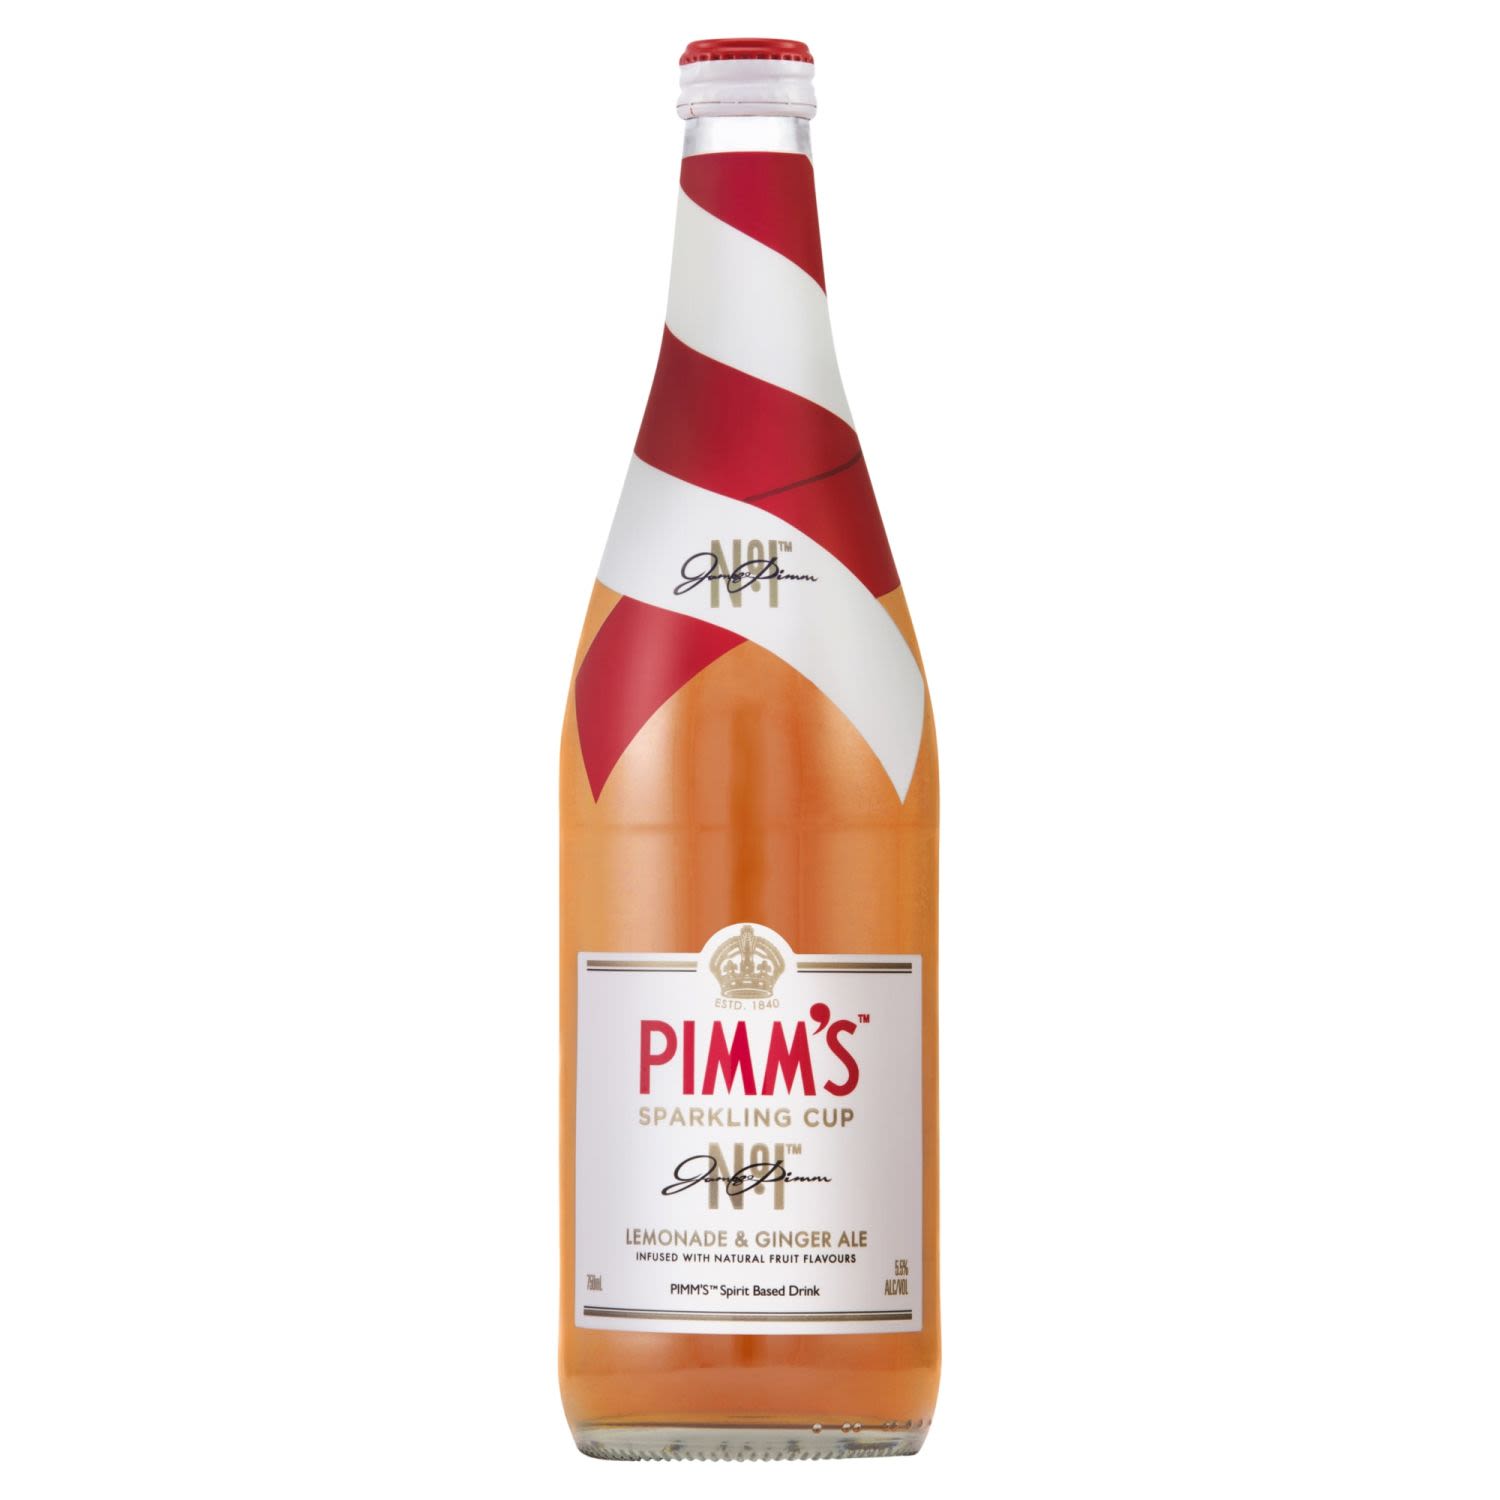 Pimm's Sparkling Cup 750mL<br /> <br />Alcohol Volume: 5.50%<br /><br />Pack Format: Bottle<br /><br />Standard Drinks: 3.3</br /><br />Pack Type: Bottle<br />